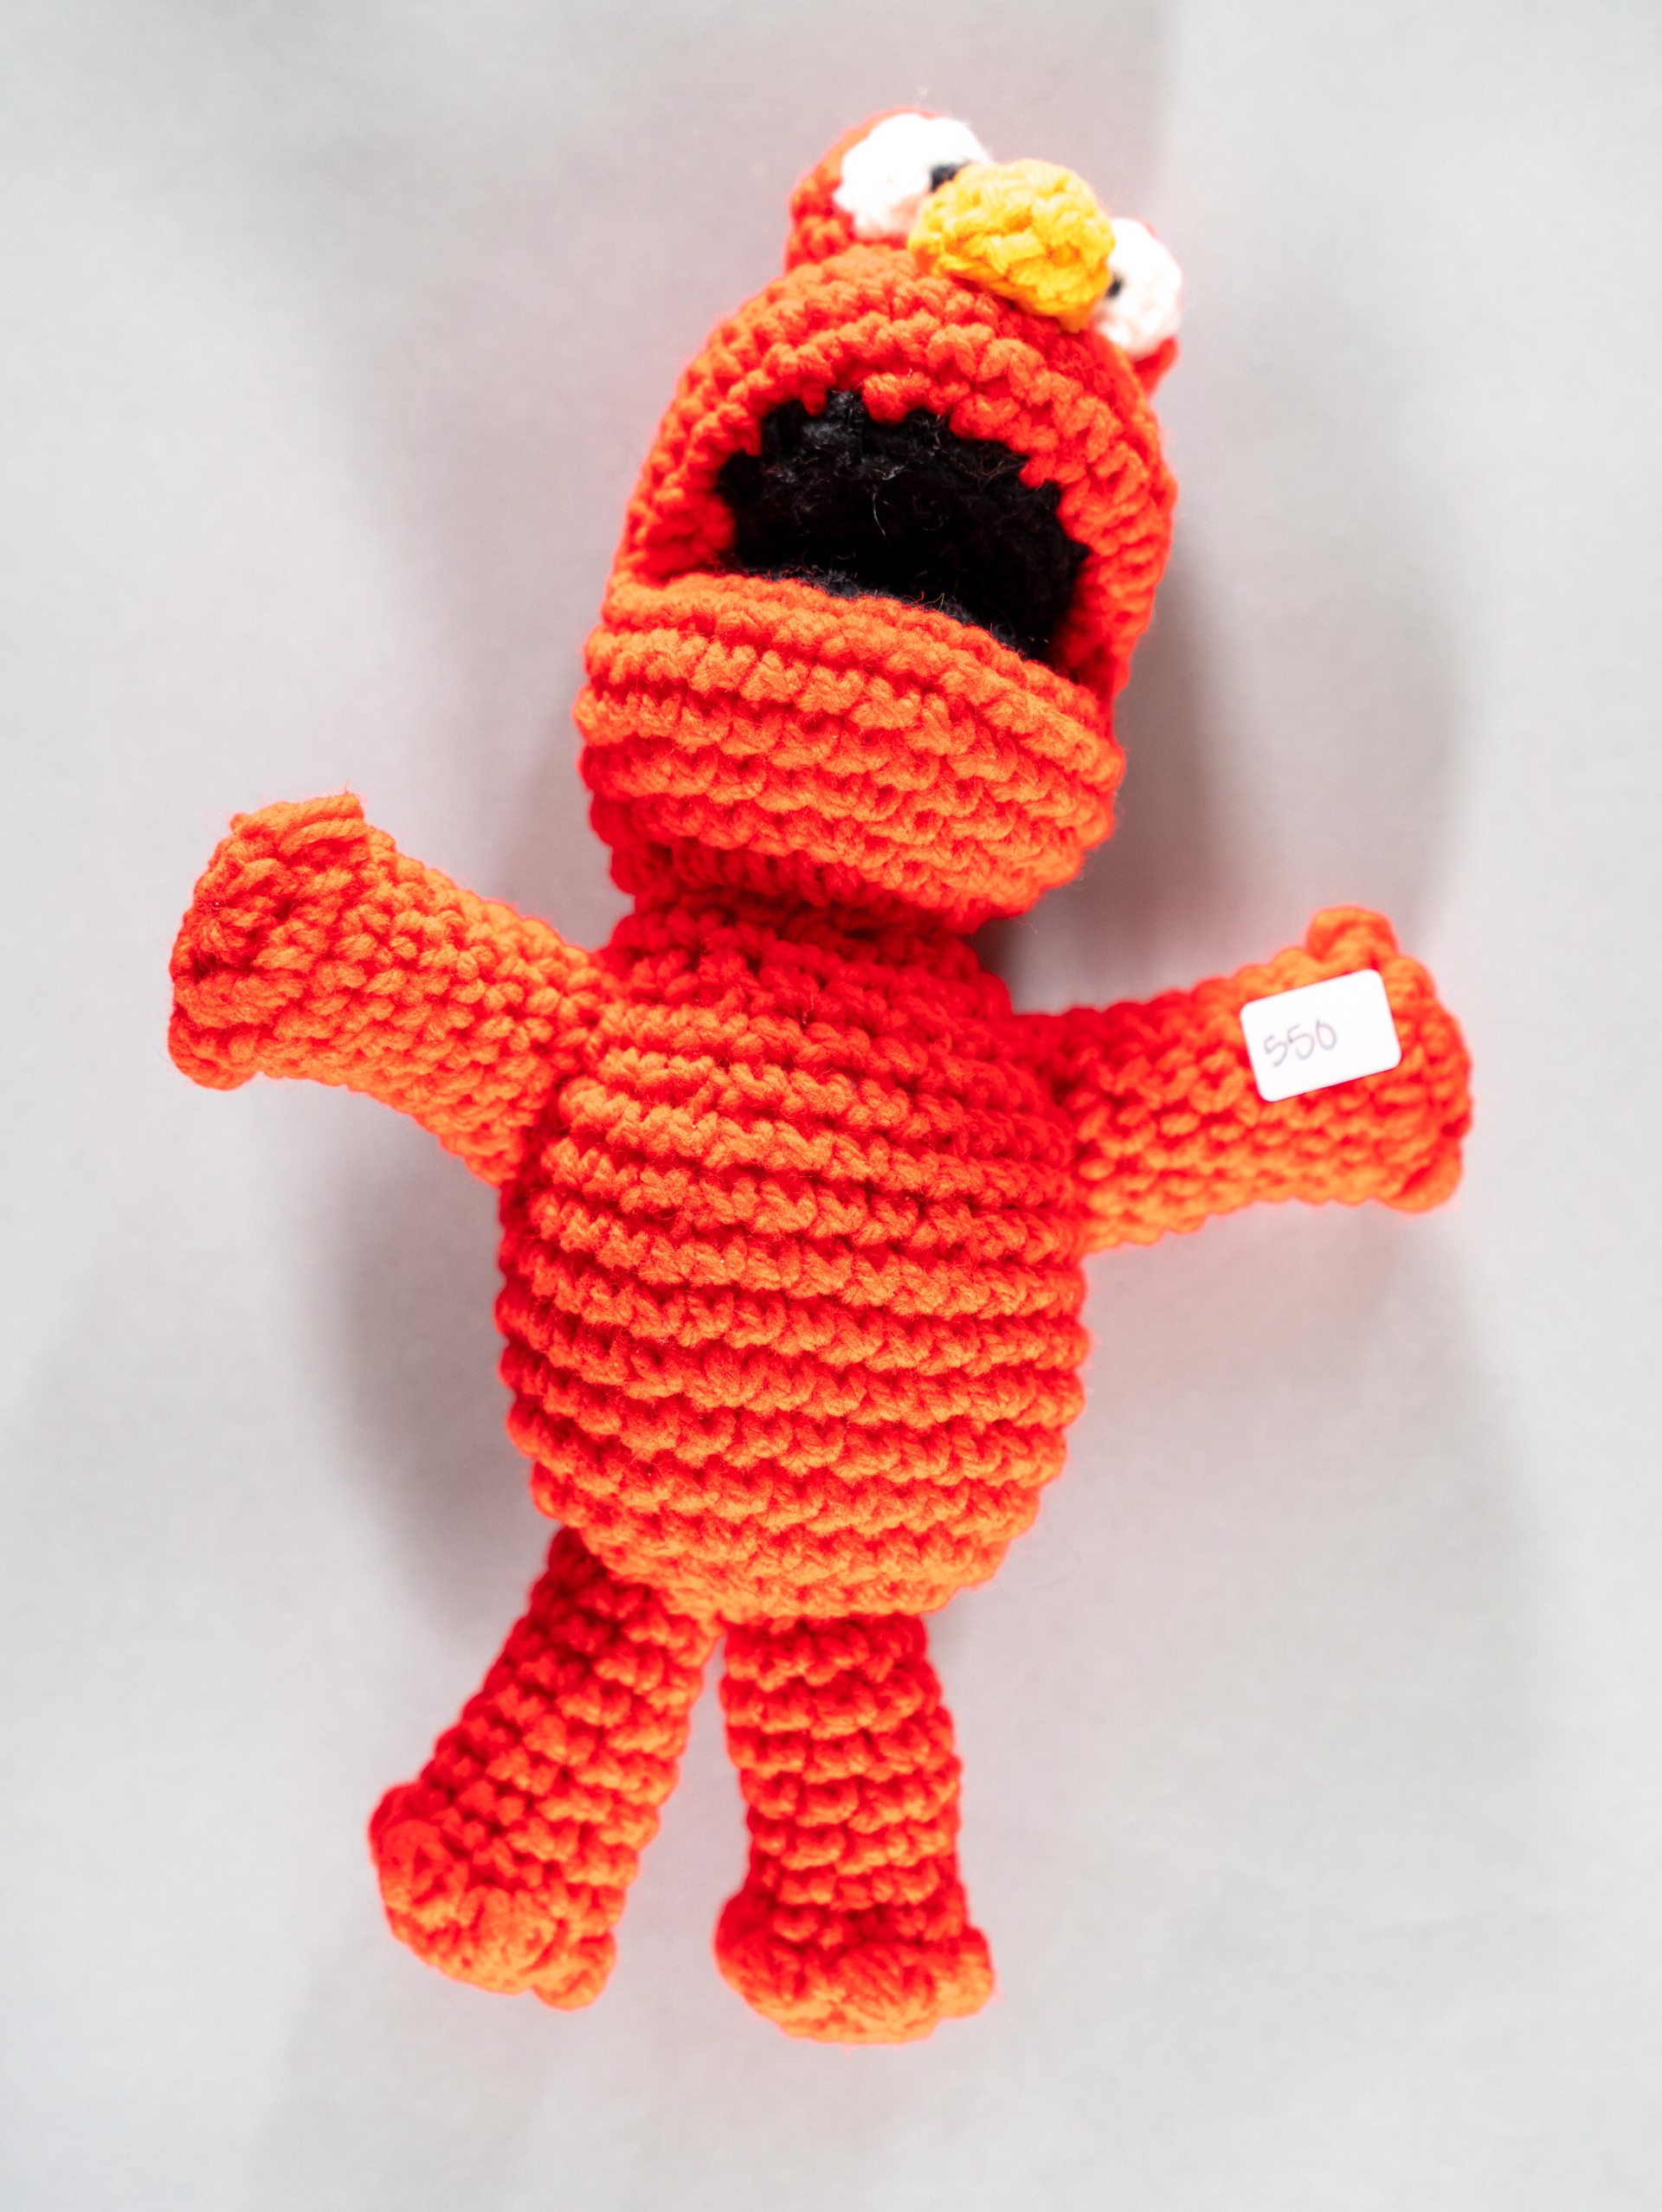 Elmo crochet by Anthony Joseph Tupper